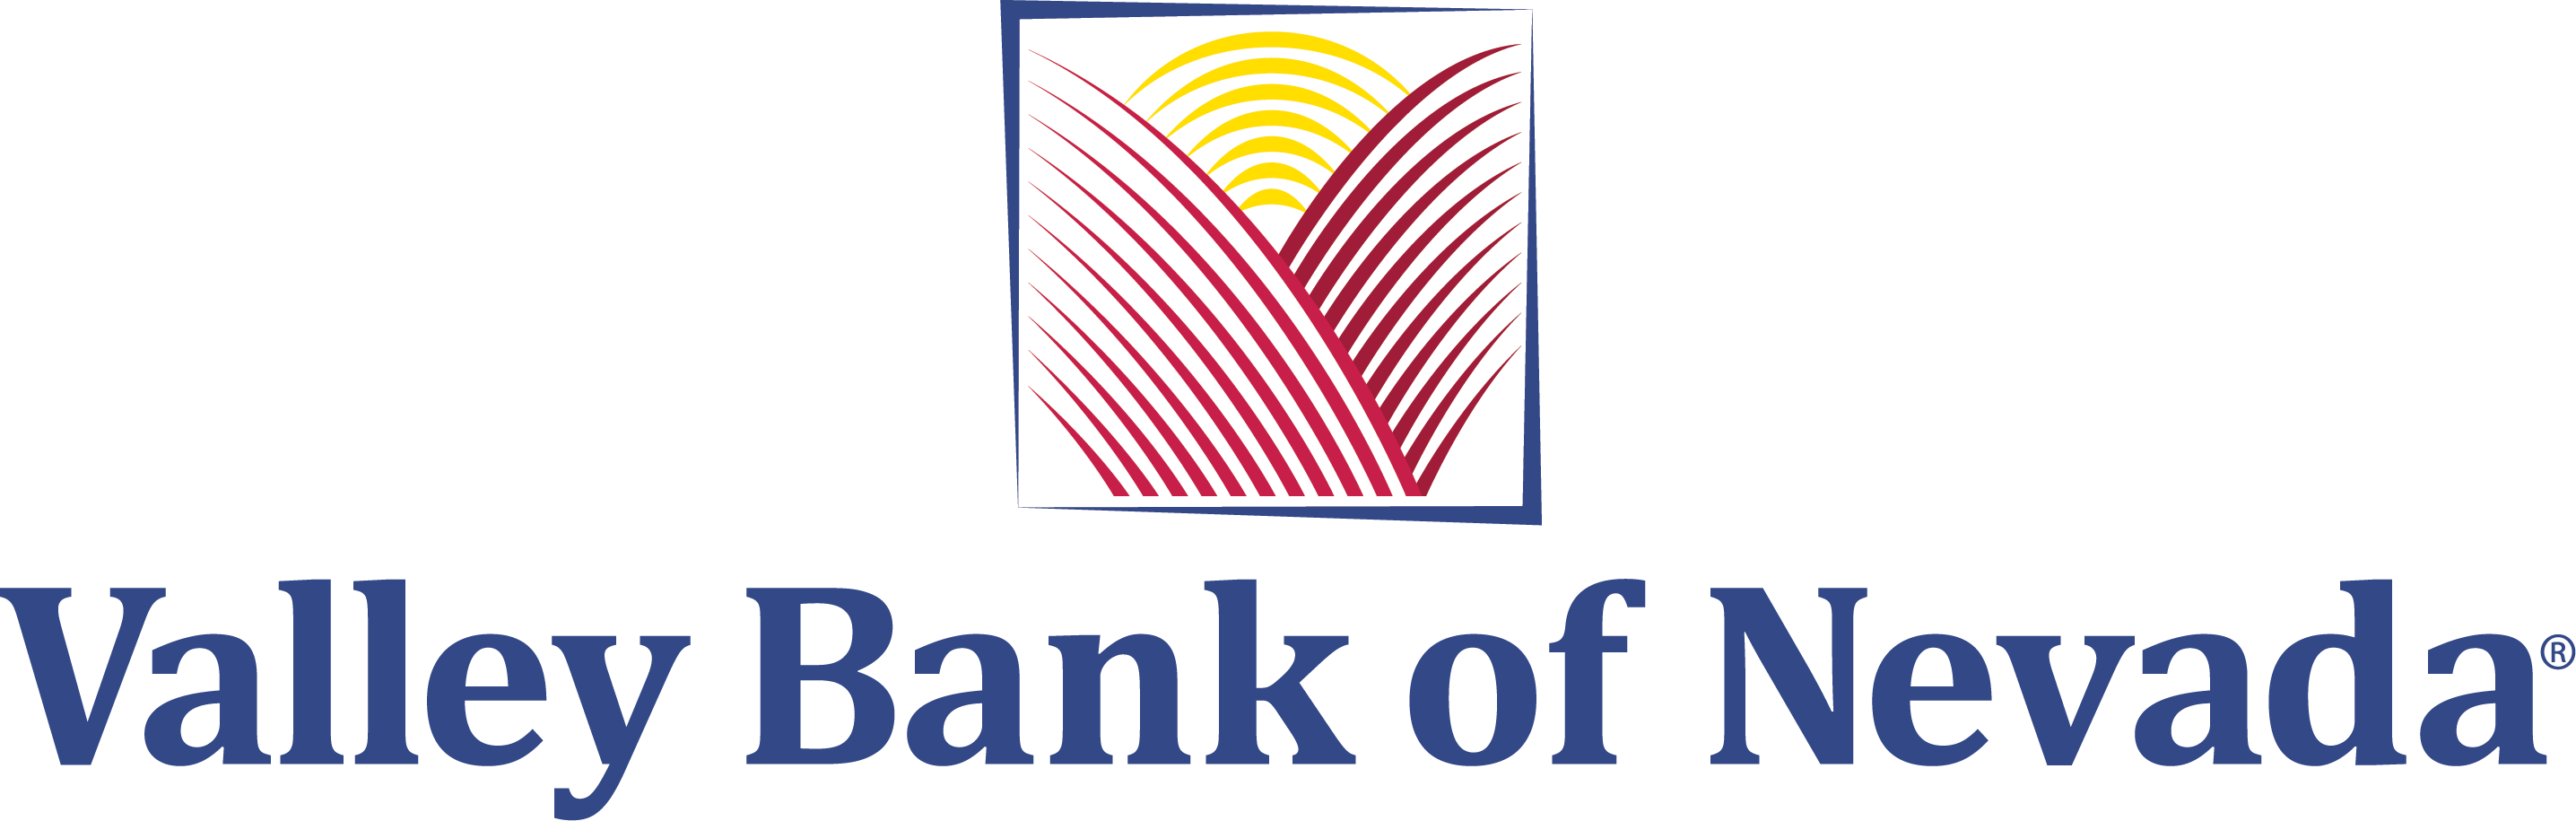 Valley Bank of Nevada Logo - Mobile